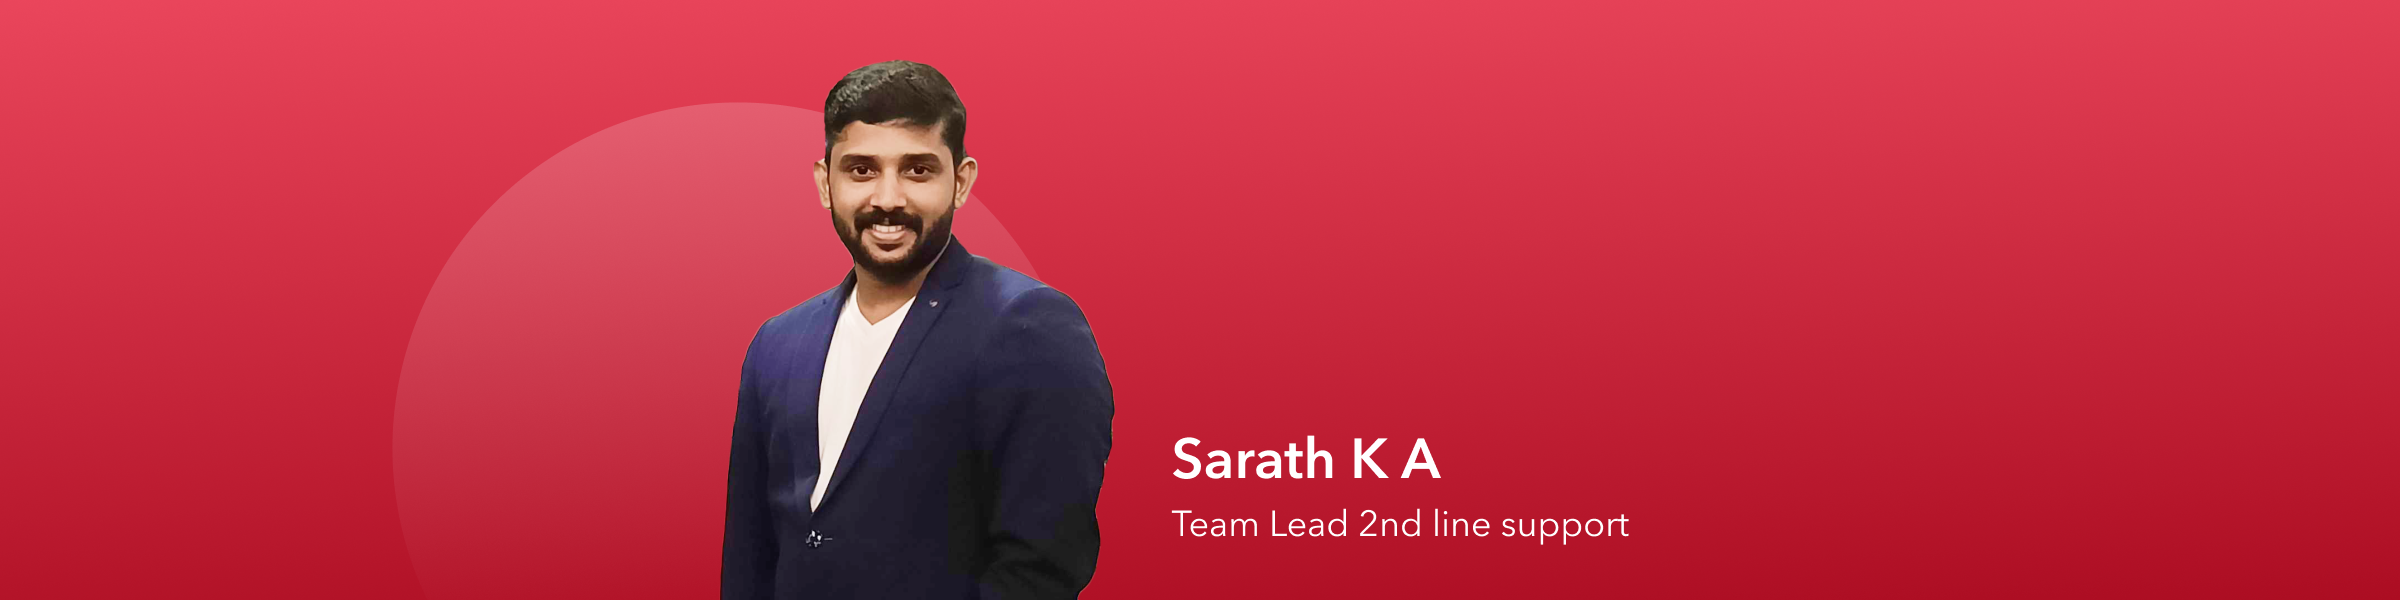 Meet Team Openprovider: Sarath